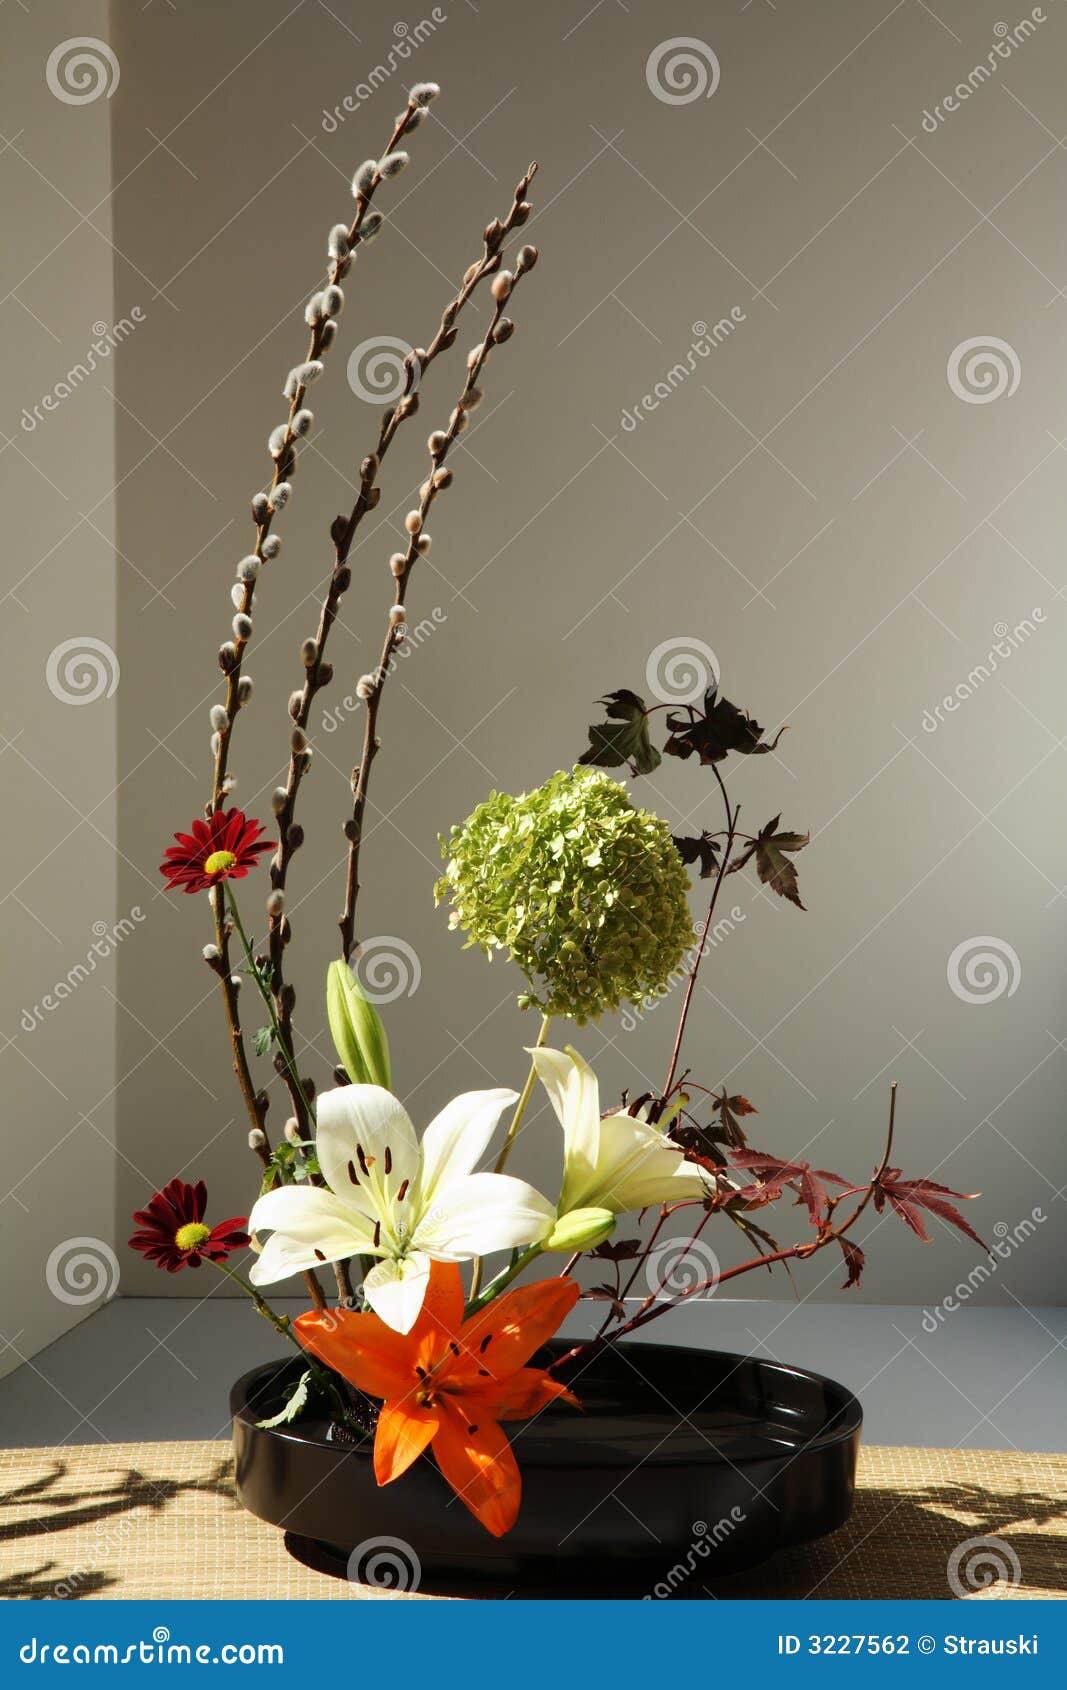 Disposizione di fiore (ikebana) creata dopo lo stile utilizzato nella coltura giapponese.